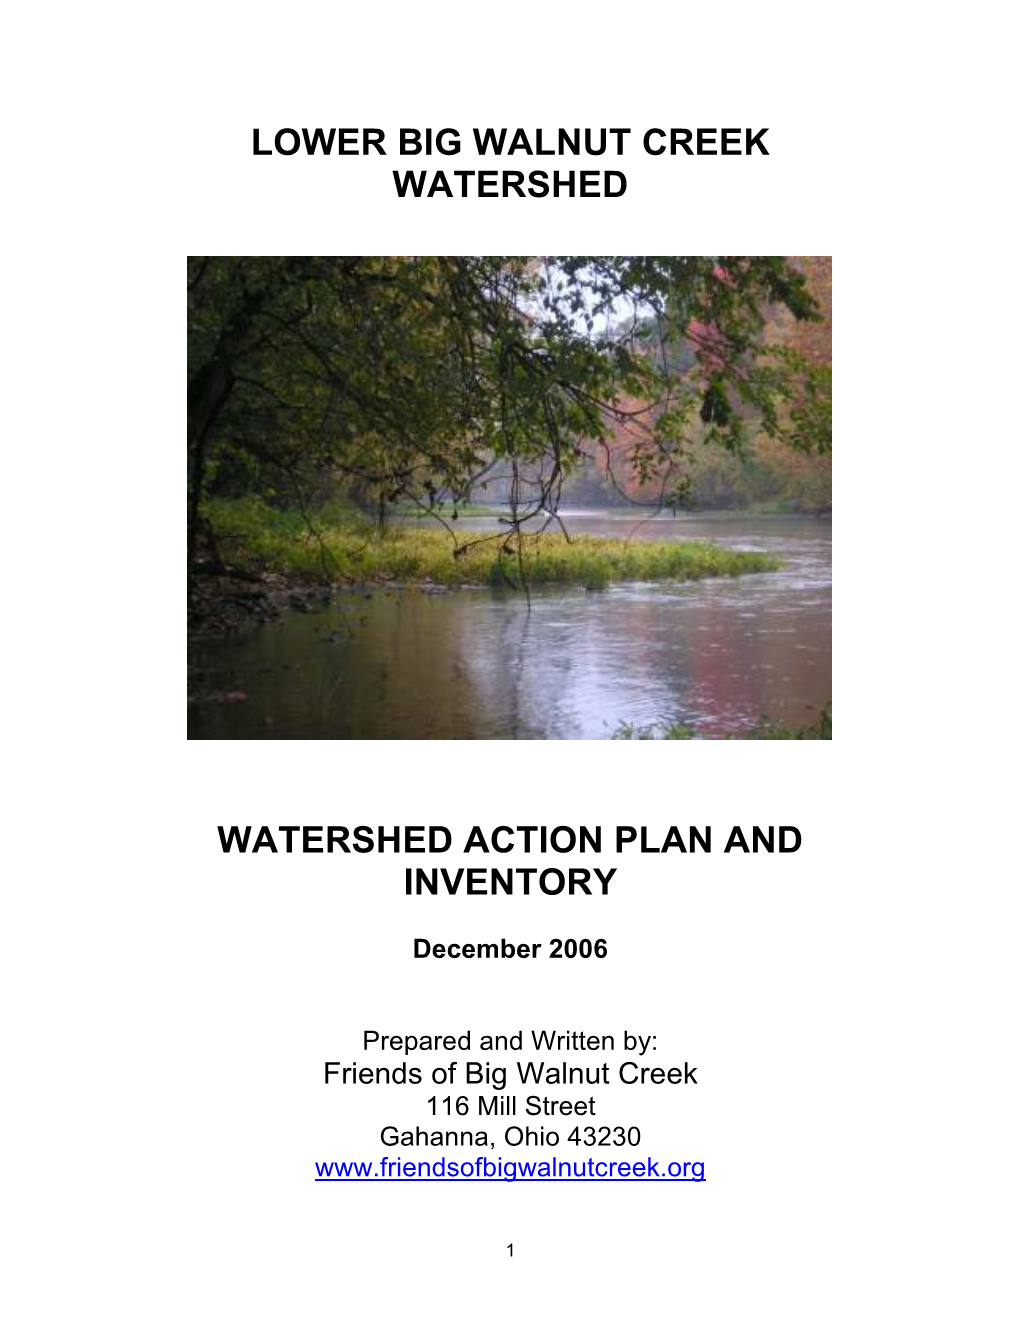 Lower Big Walnut Creek Watershed